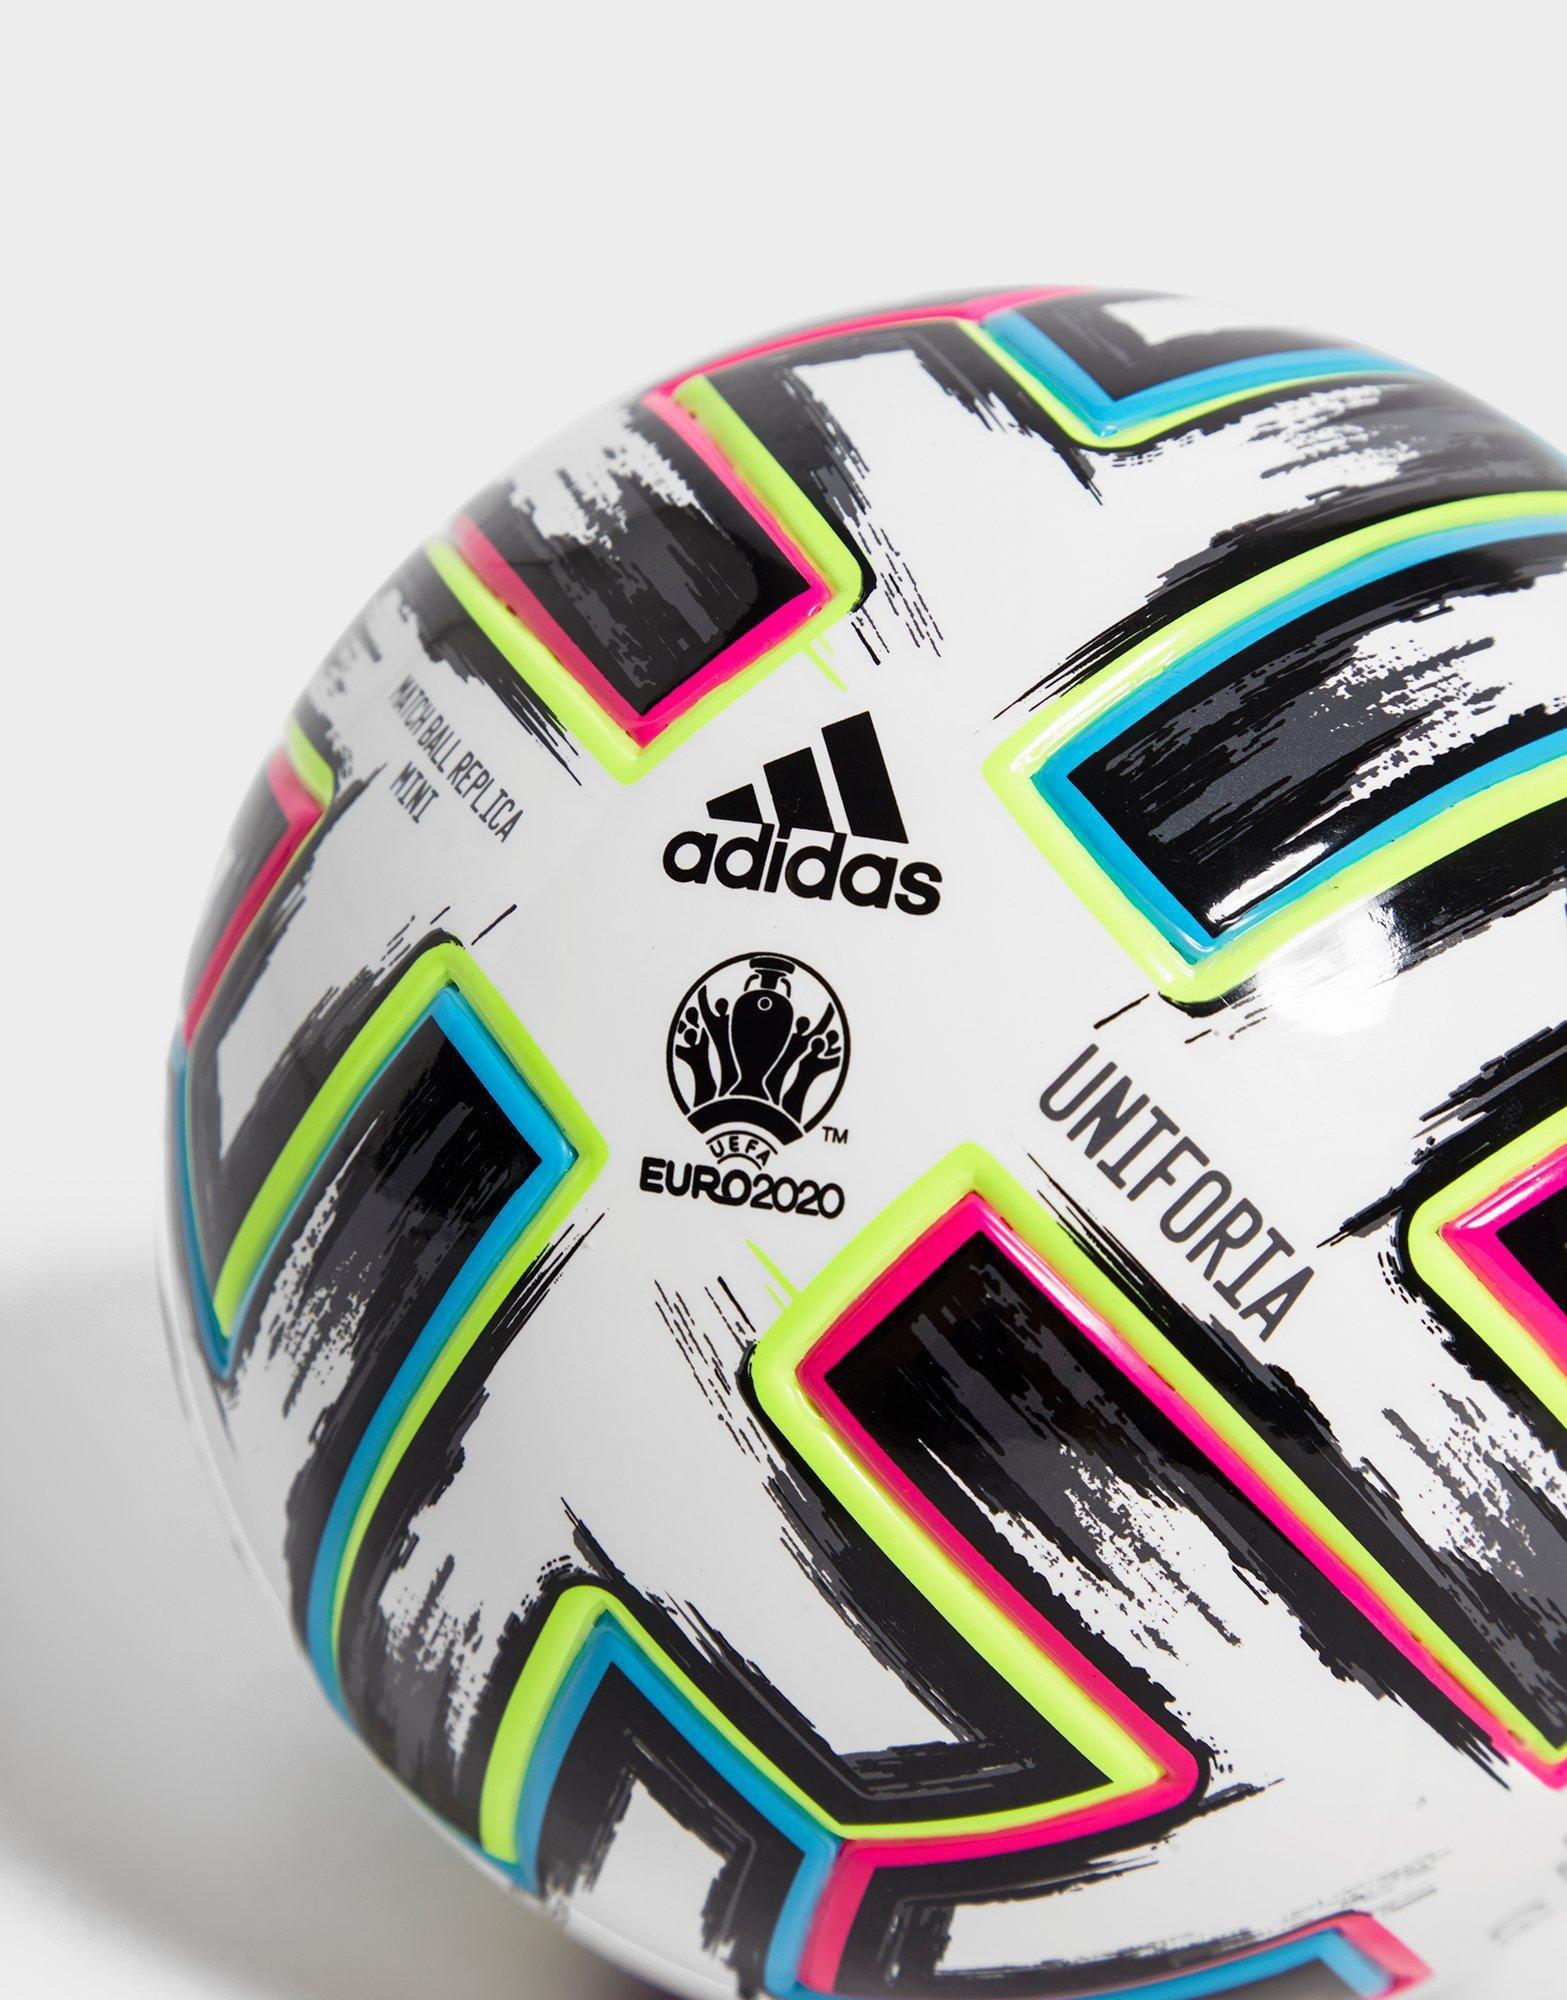 palloni da calcio adidas